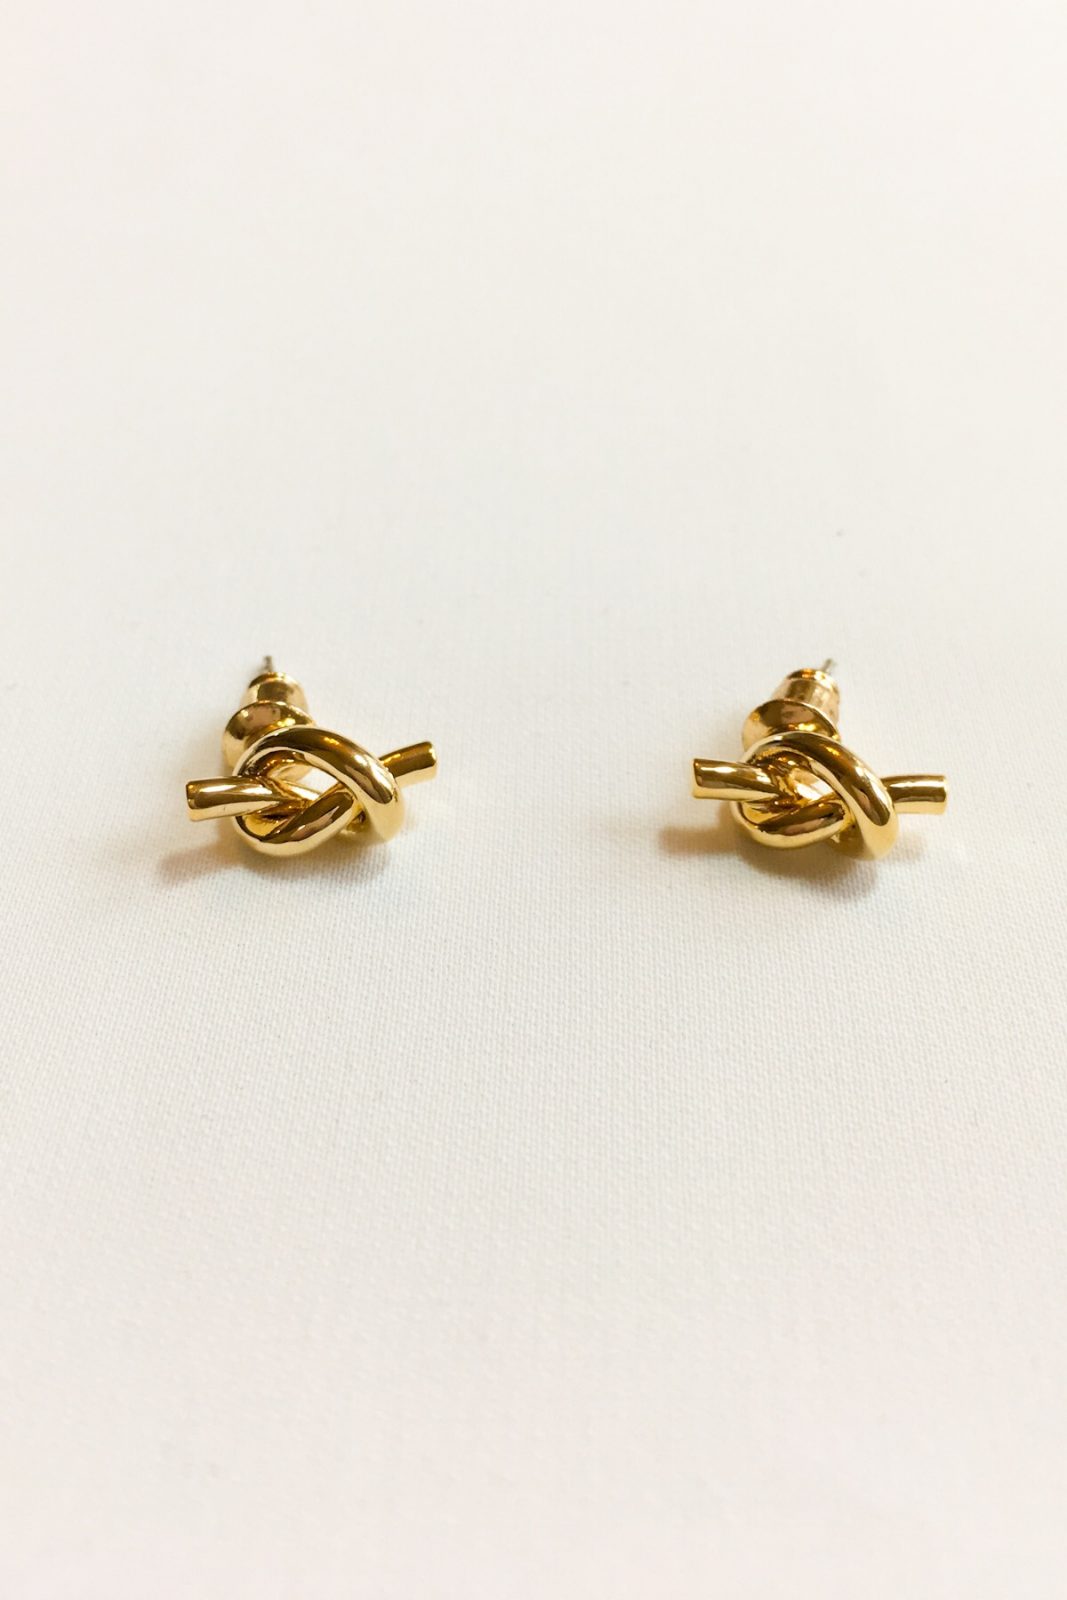 SKYE modern minimalist women fashion accessories Noe 18K Gold Knot Earrings 3